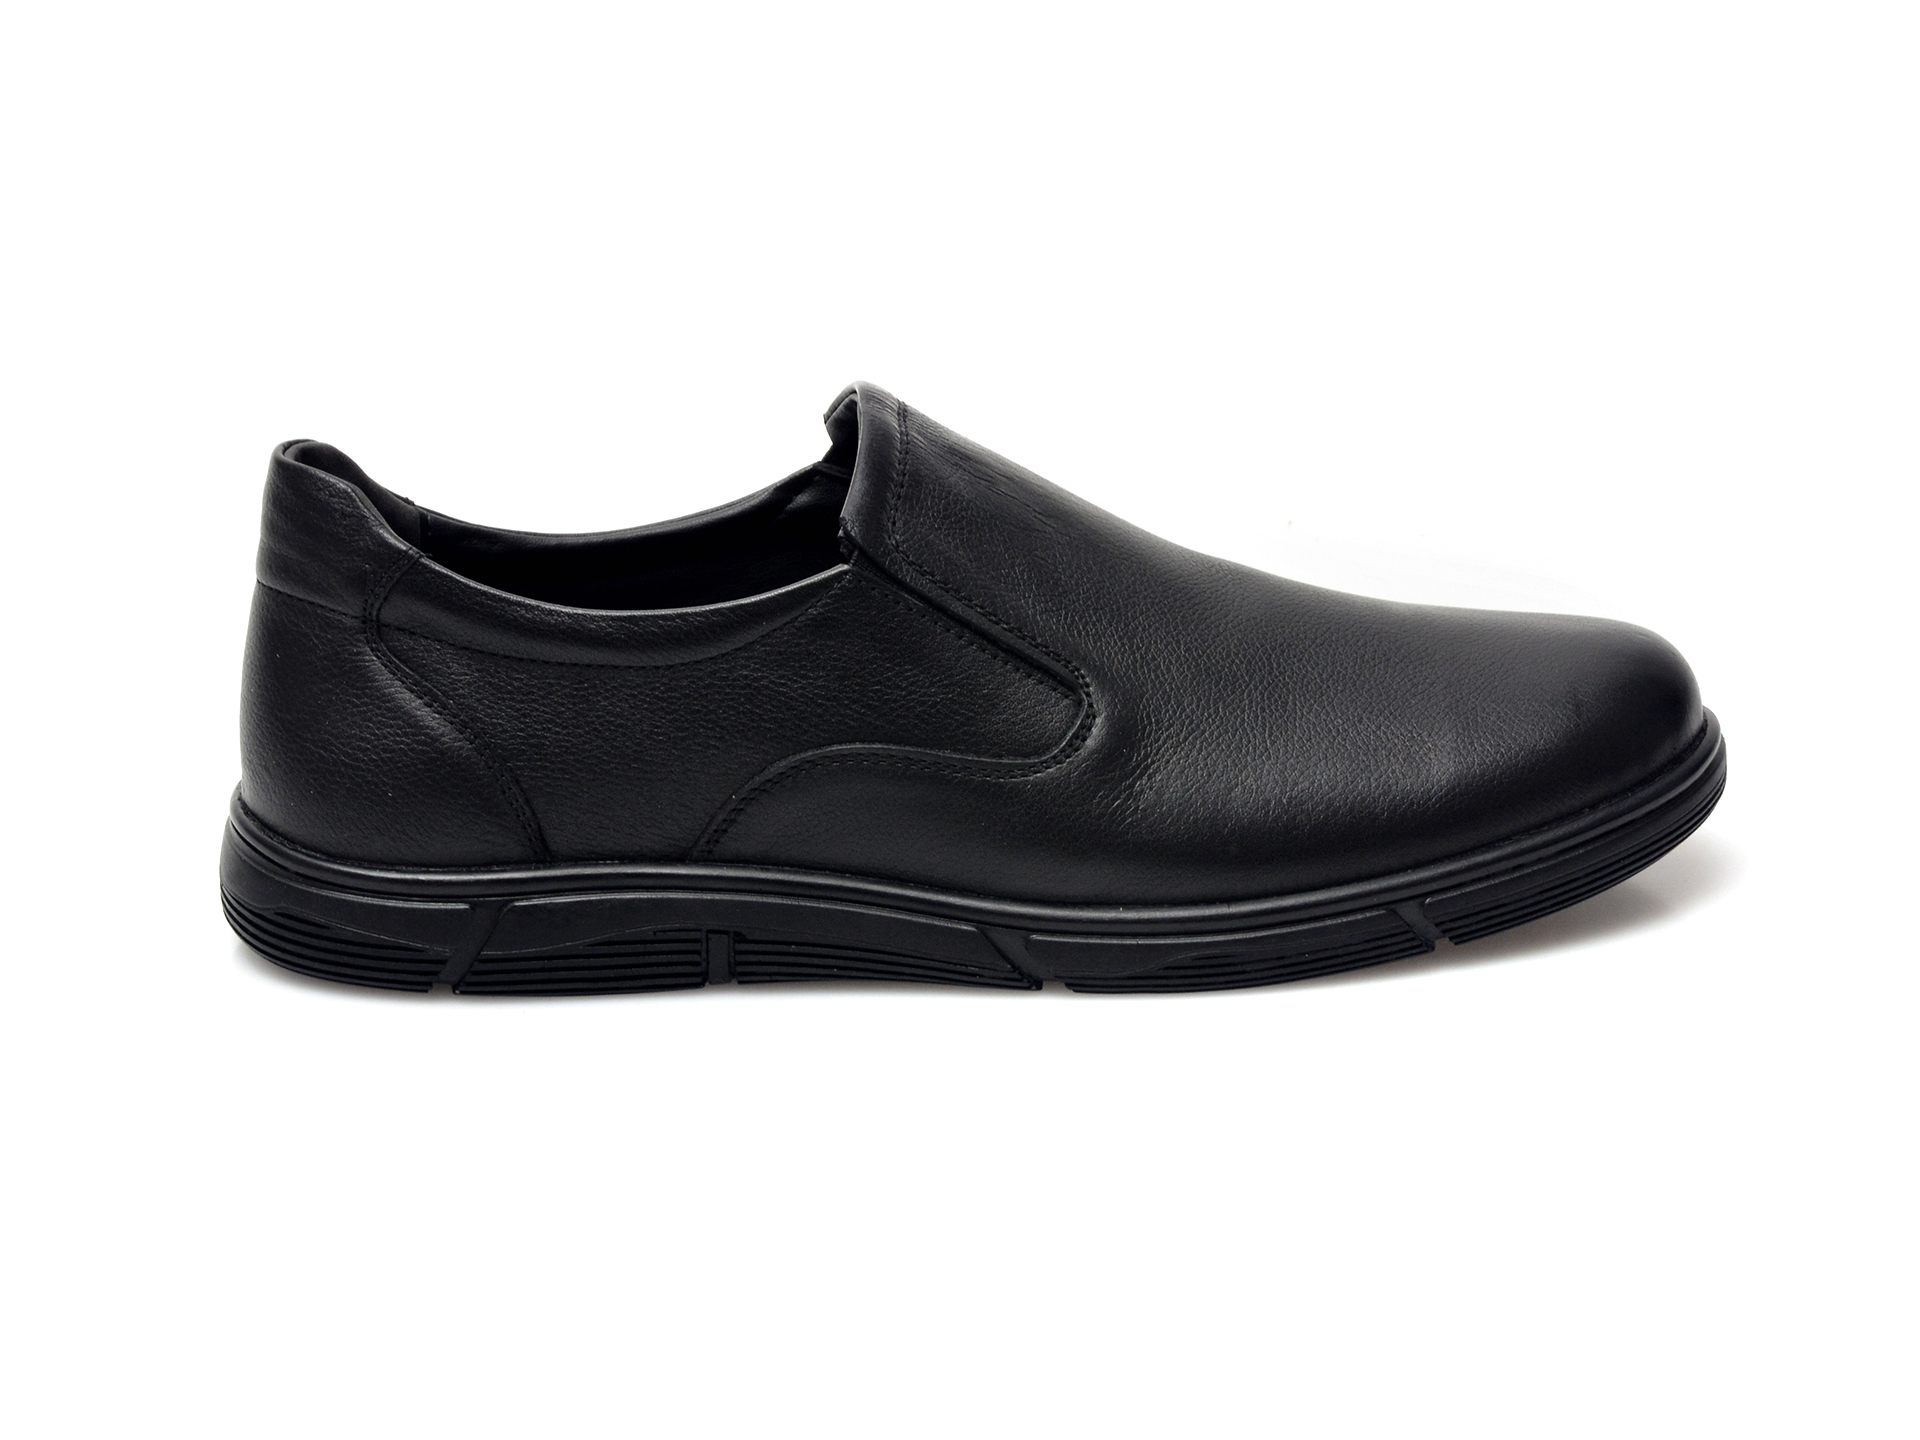 Poze Pantofi POLARIS negri, 104060, din piele naturala otter.ro